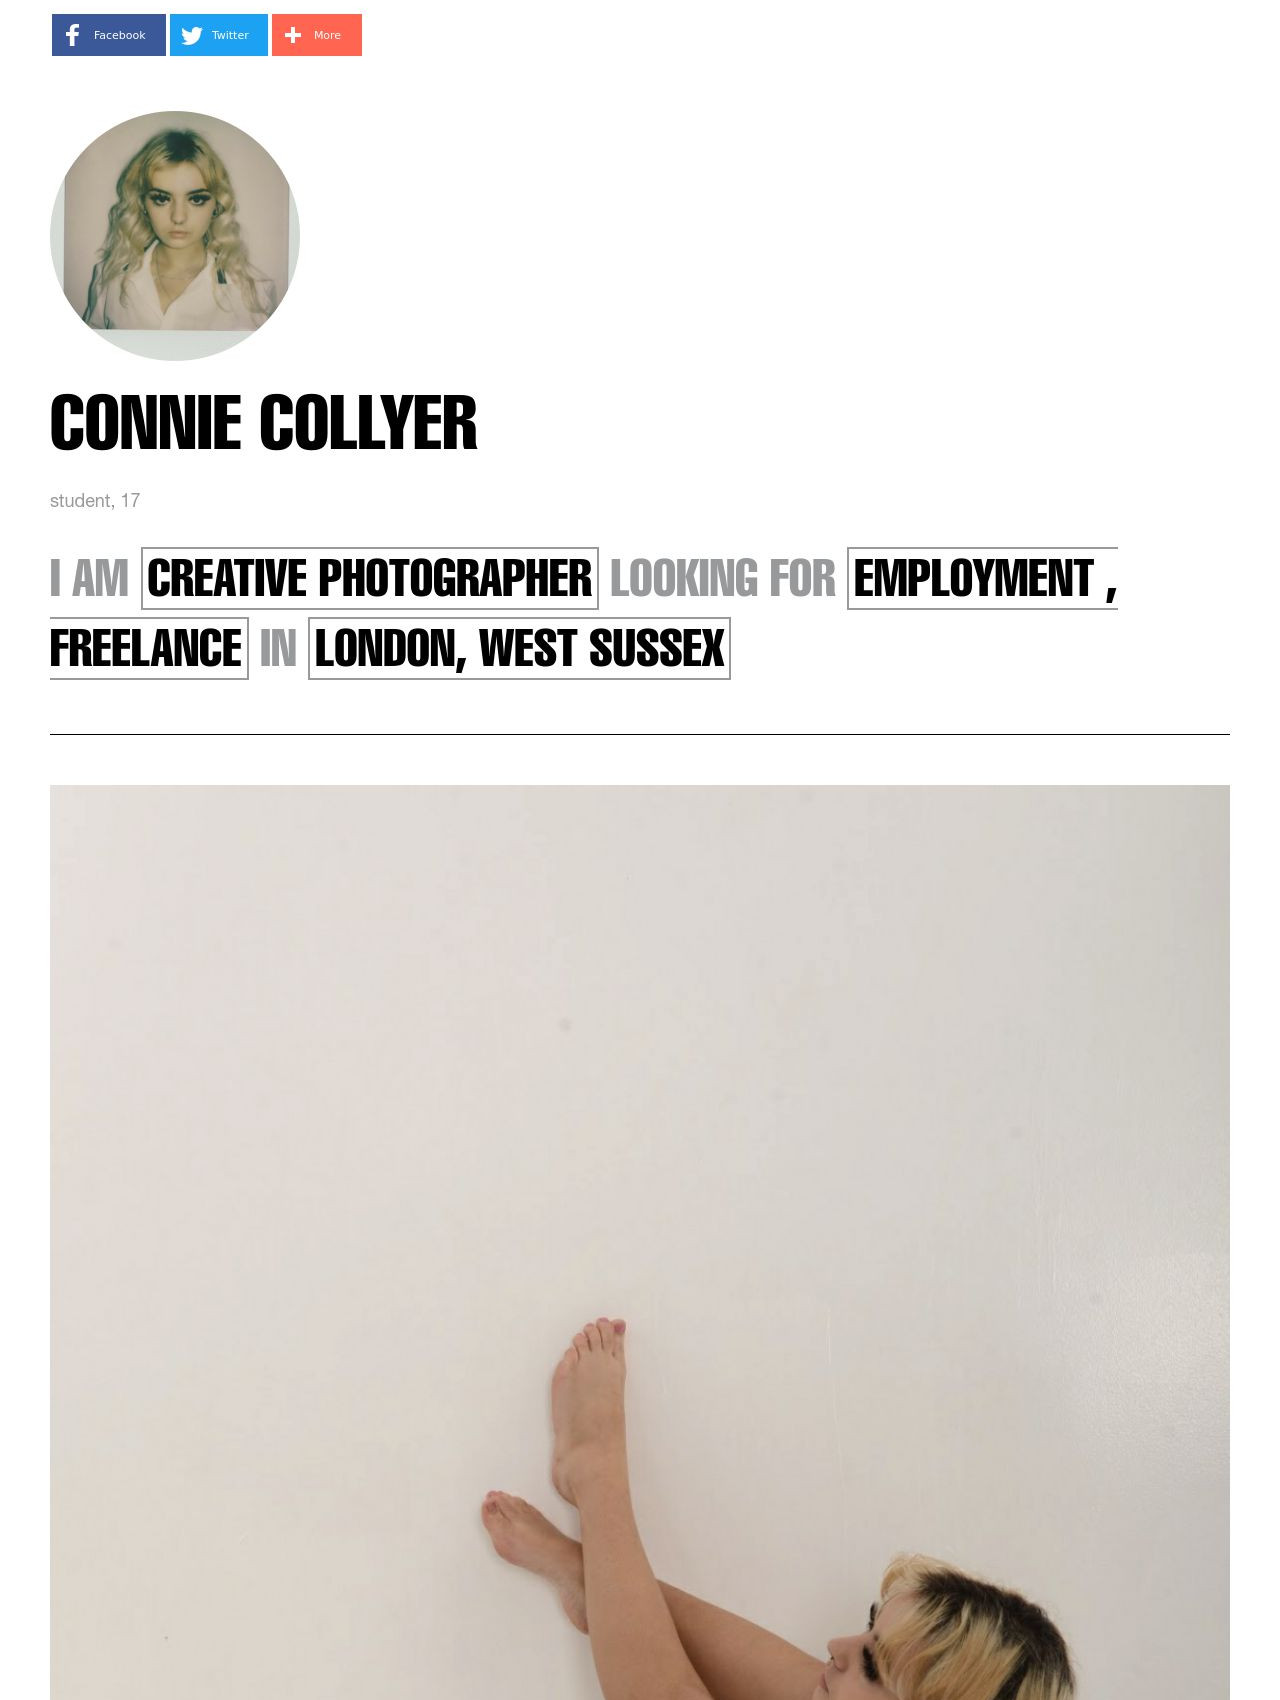 Connie Collyer